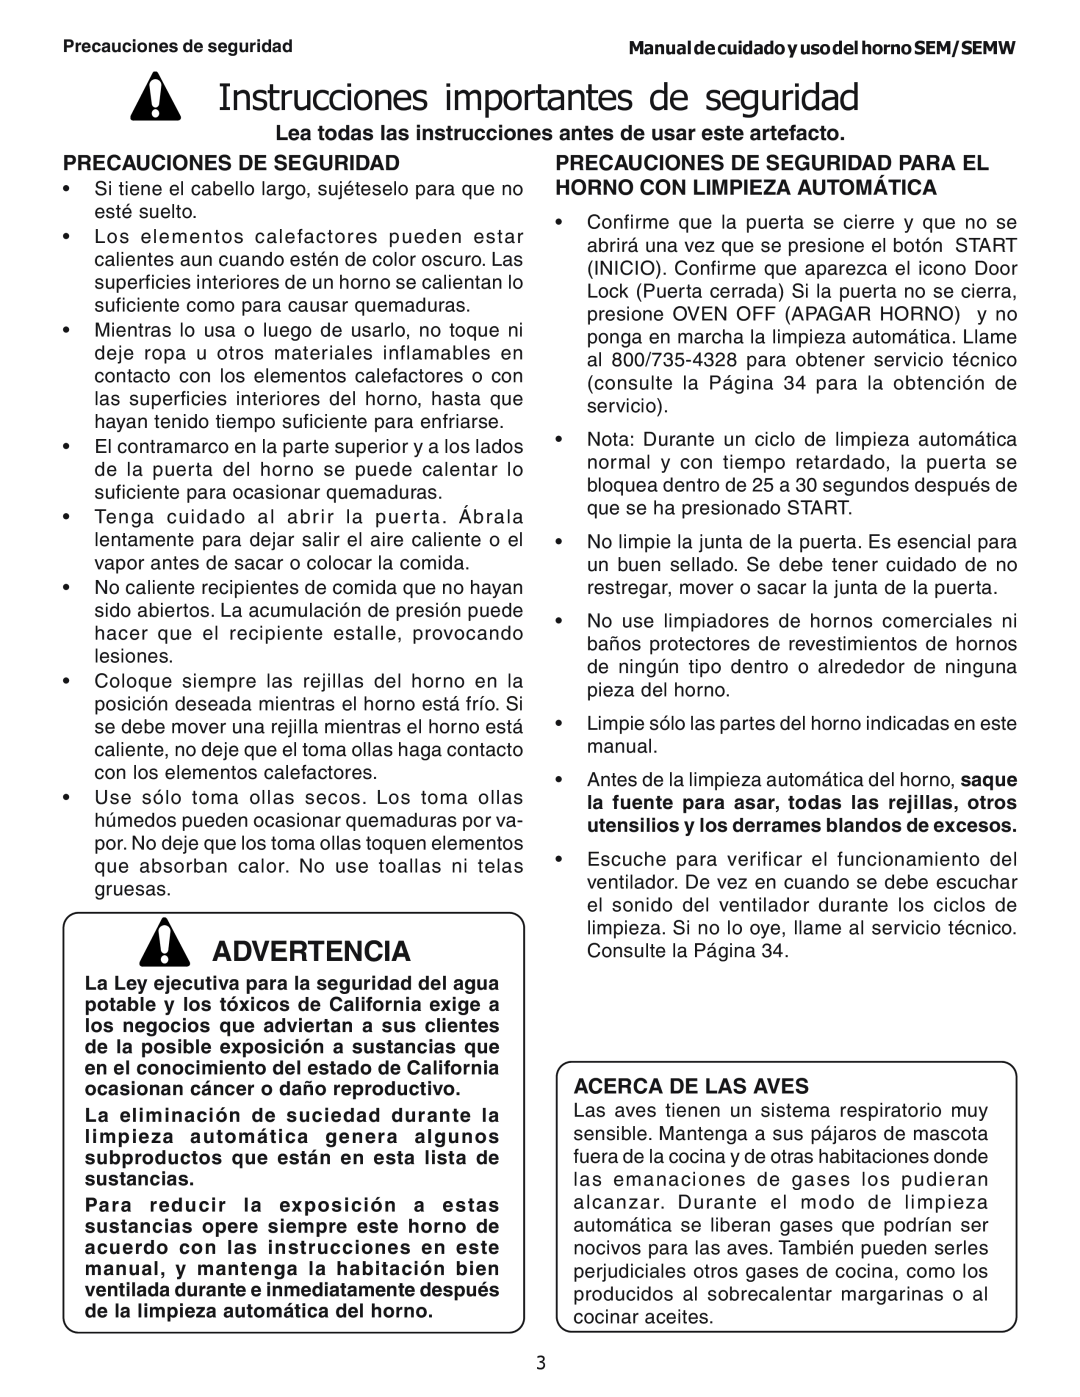 Thermador SEMW272 manual Precauciones De Seguridad, Acerca De Las Aves, Instrucciones importantes de seguridad, Advertencia 